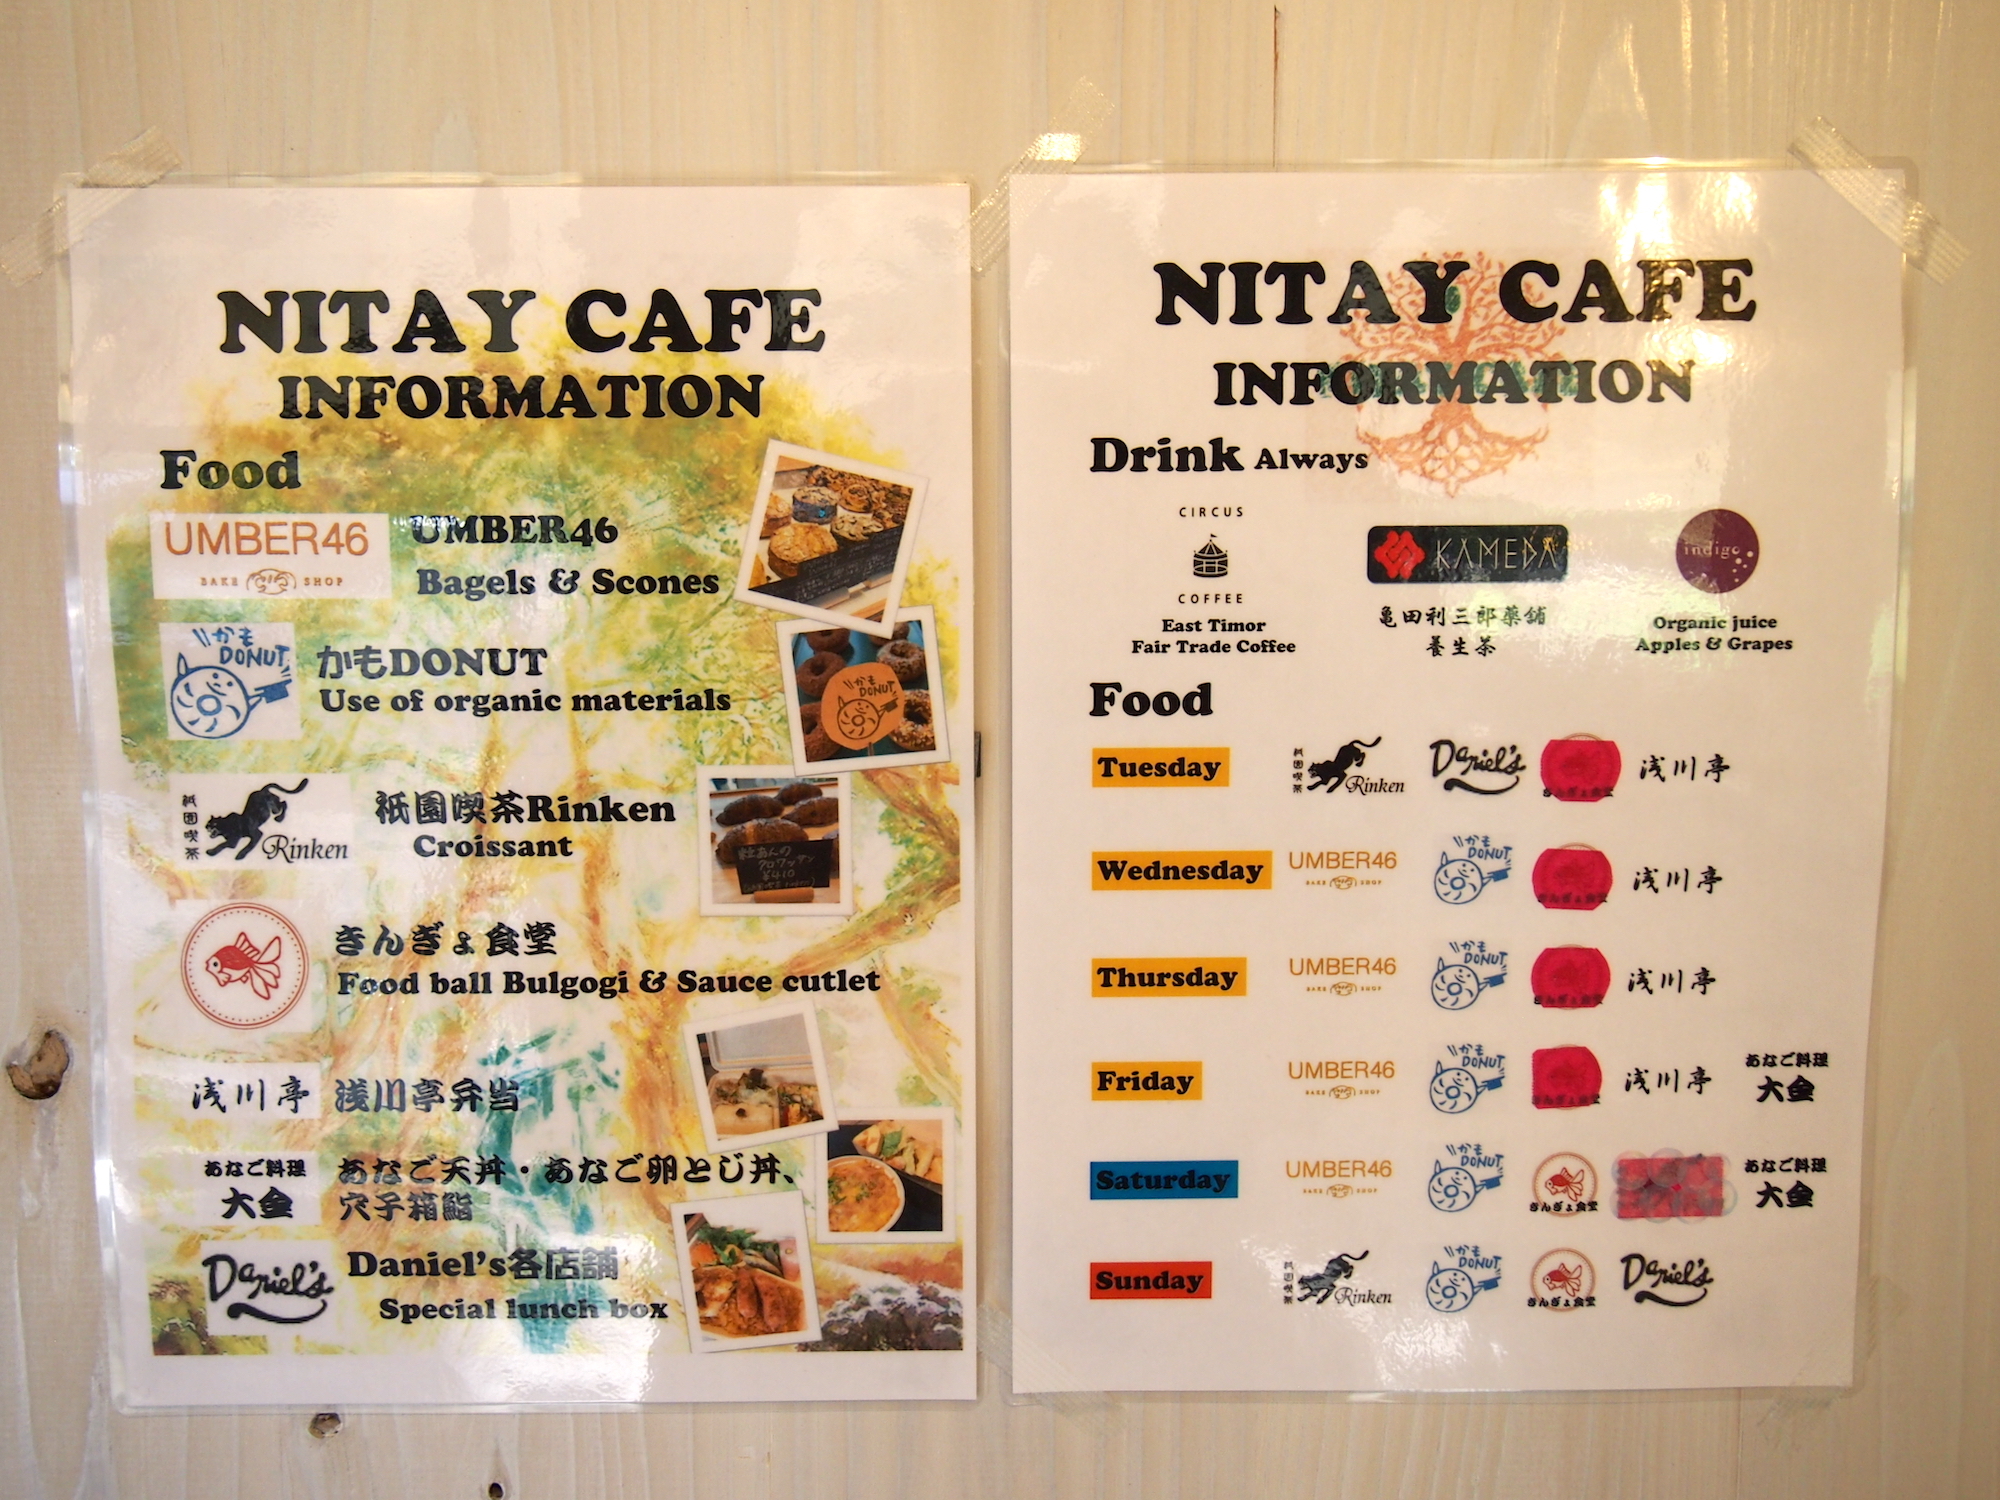 カフェは、京都市内のお店のドリンクやフードをセレクトされているようです。